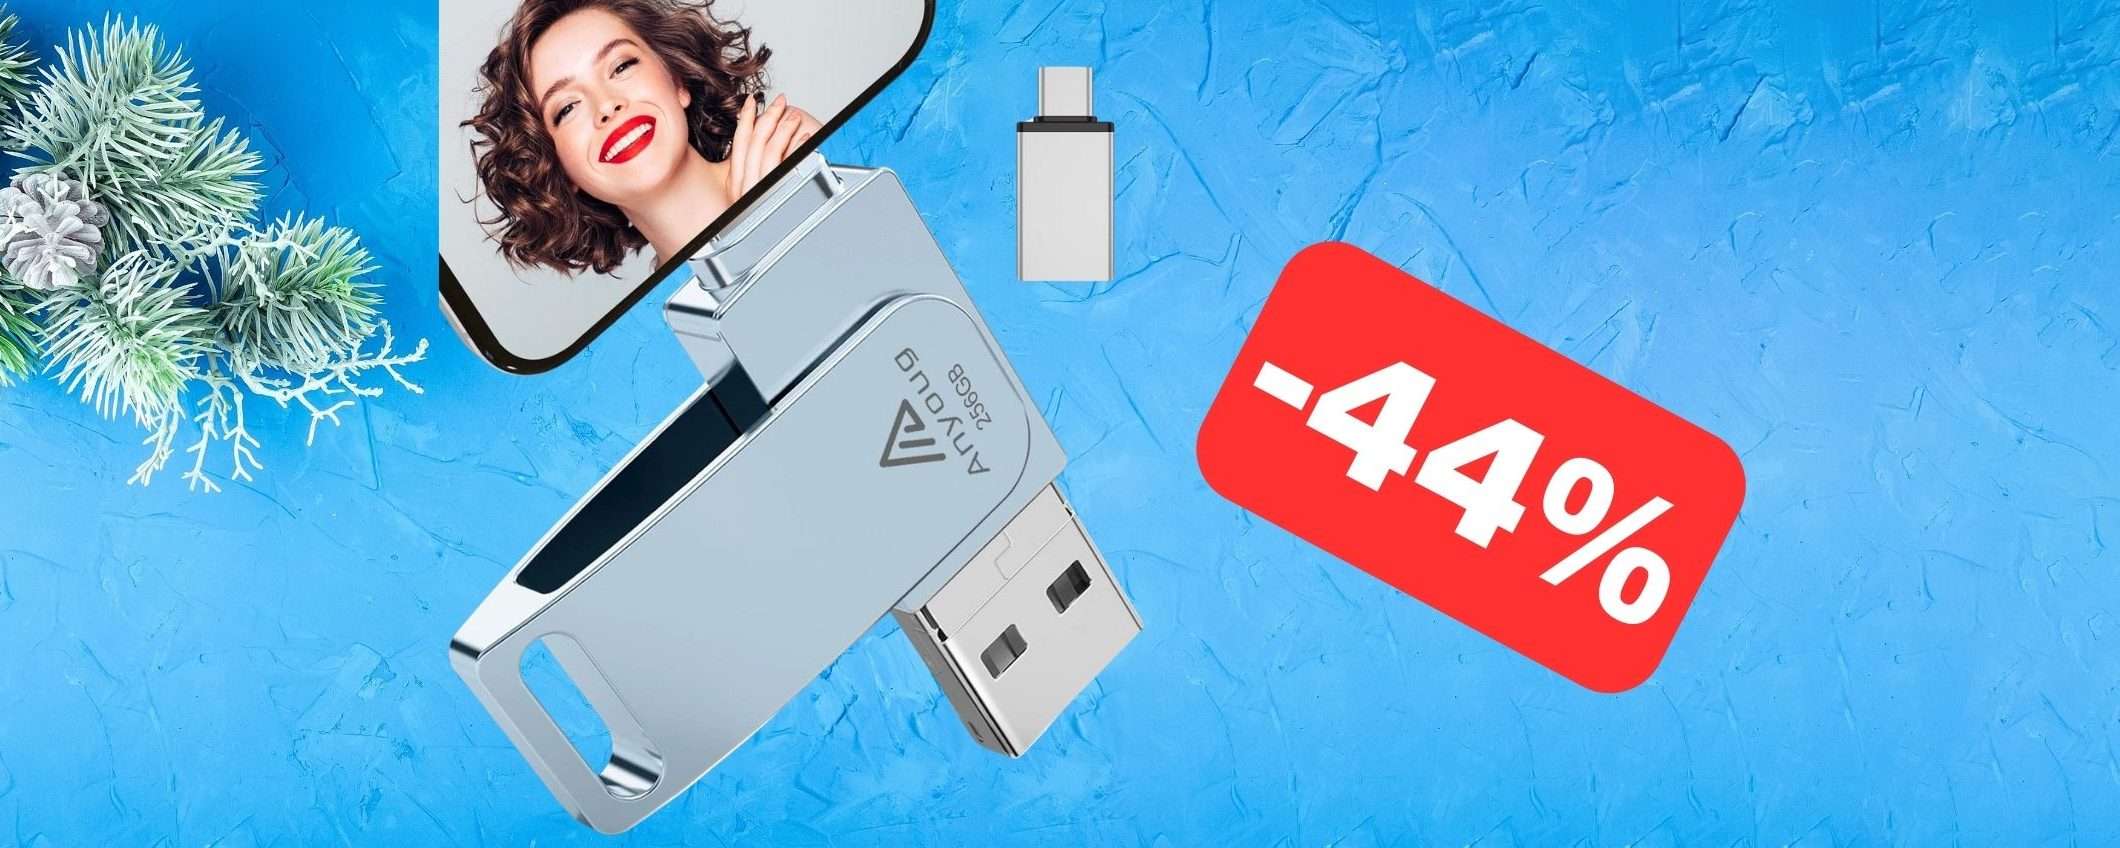 Chiavetta USB 256GB per smartphone in SUPER SCONTO su Amazon (-44%)